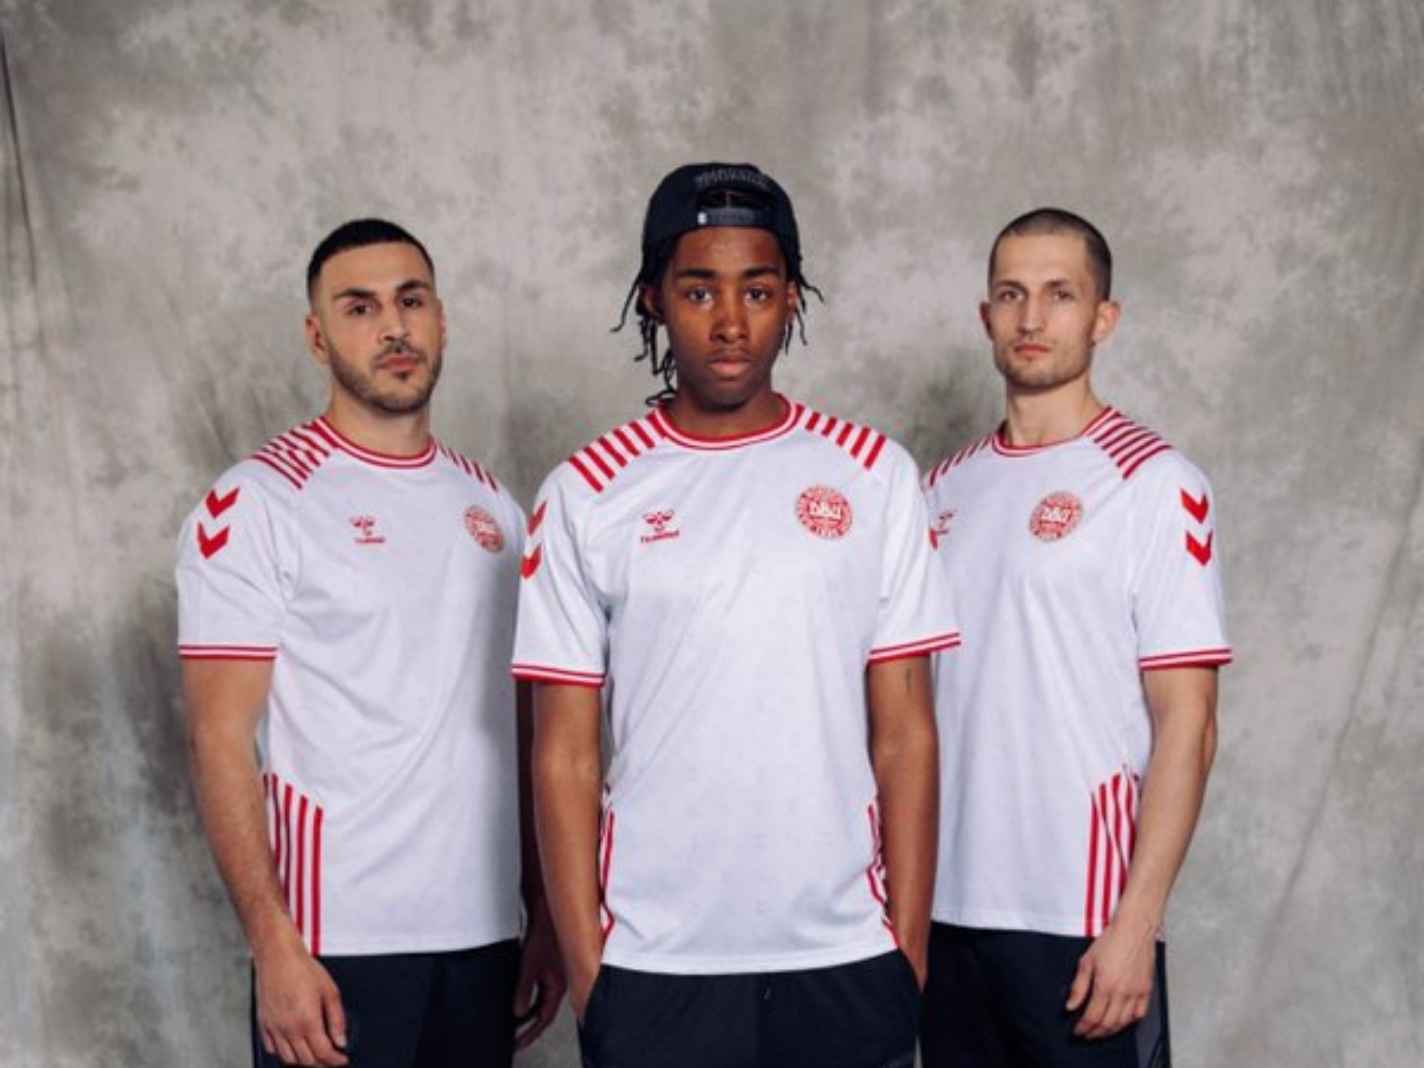 New Denmark national team kit from Hummel looks flawless